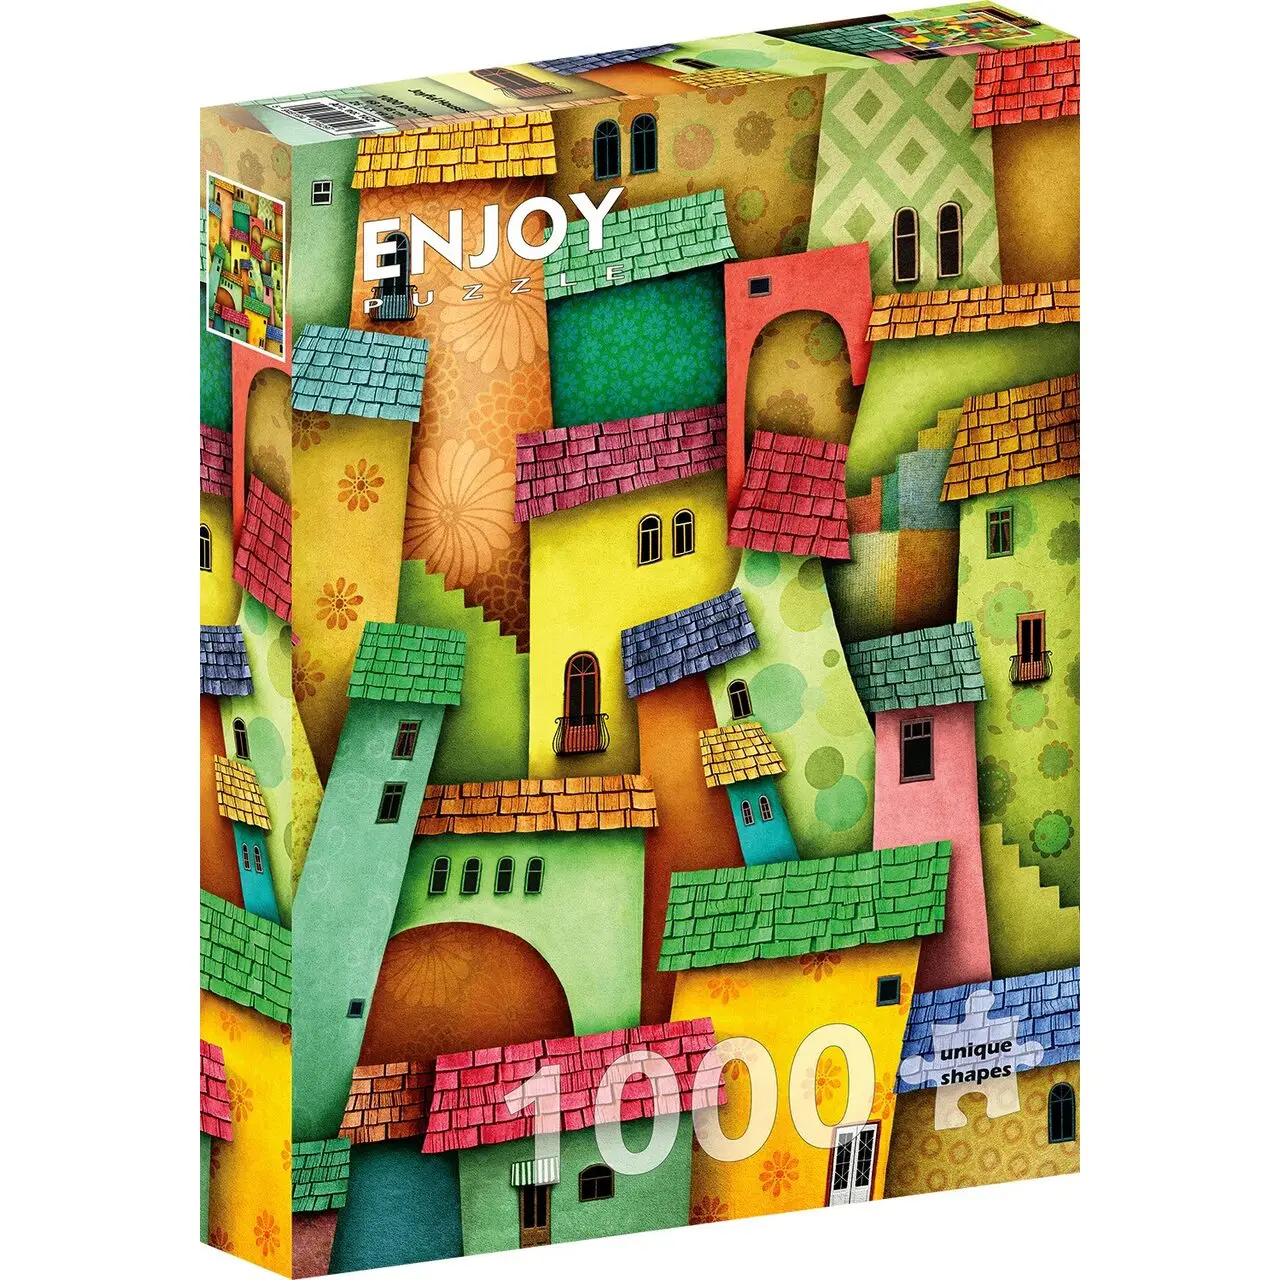 Joyful Puzzle Houses